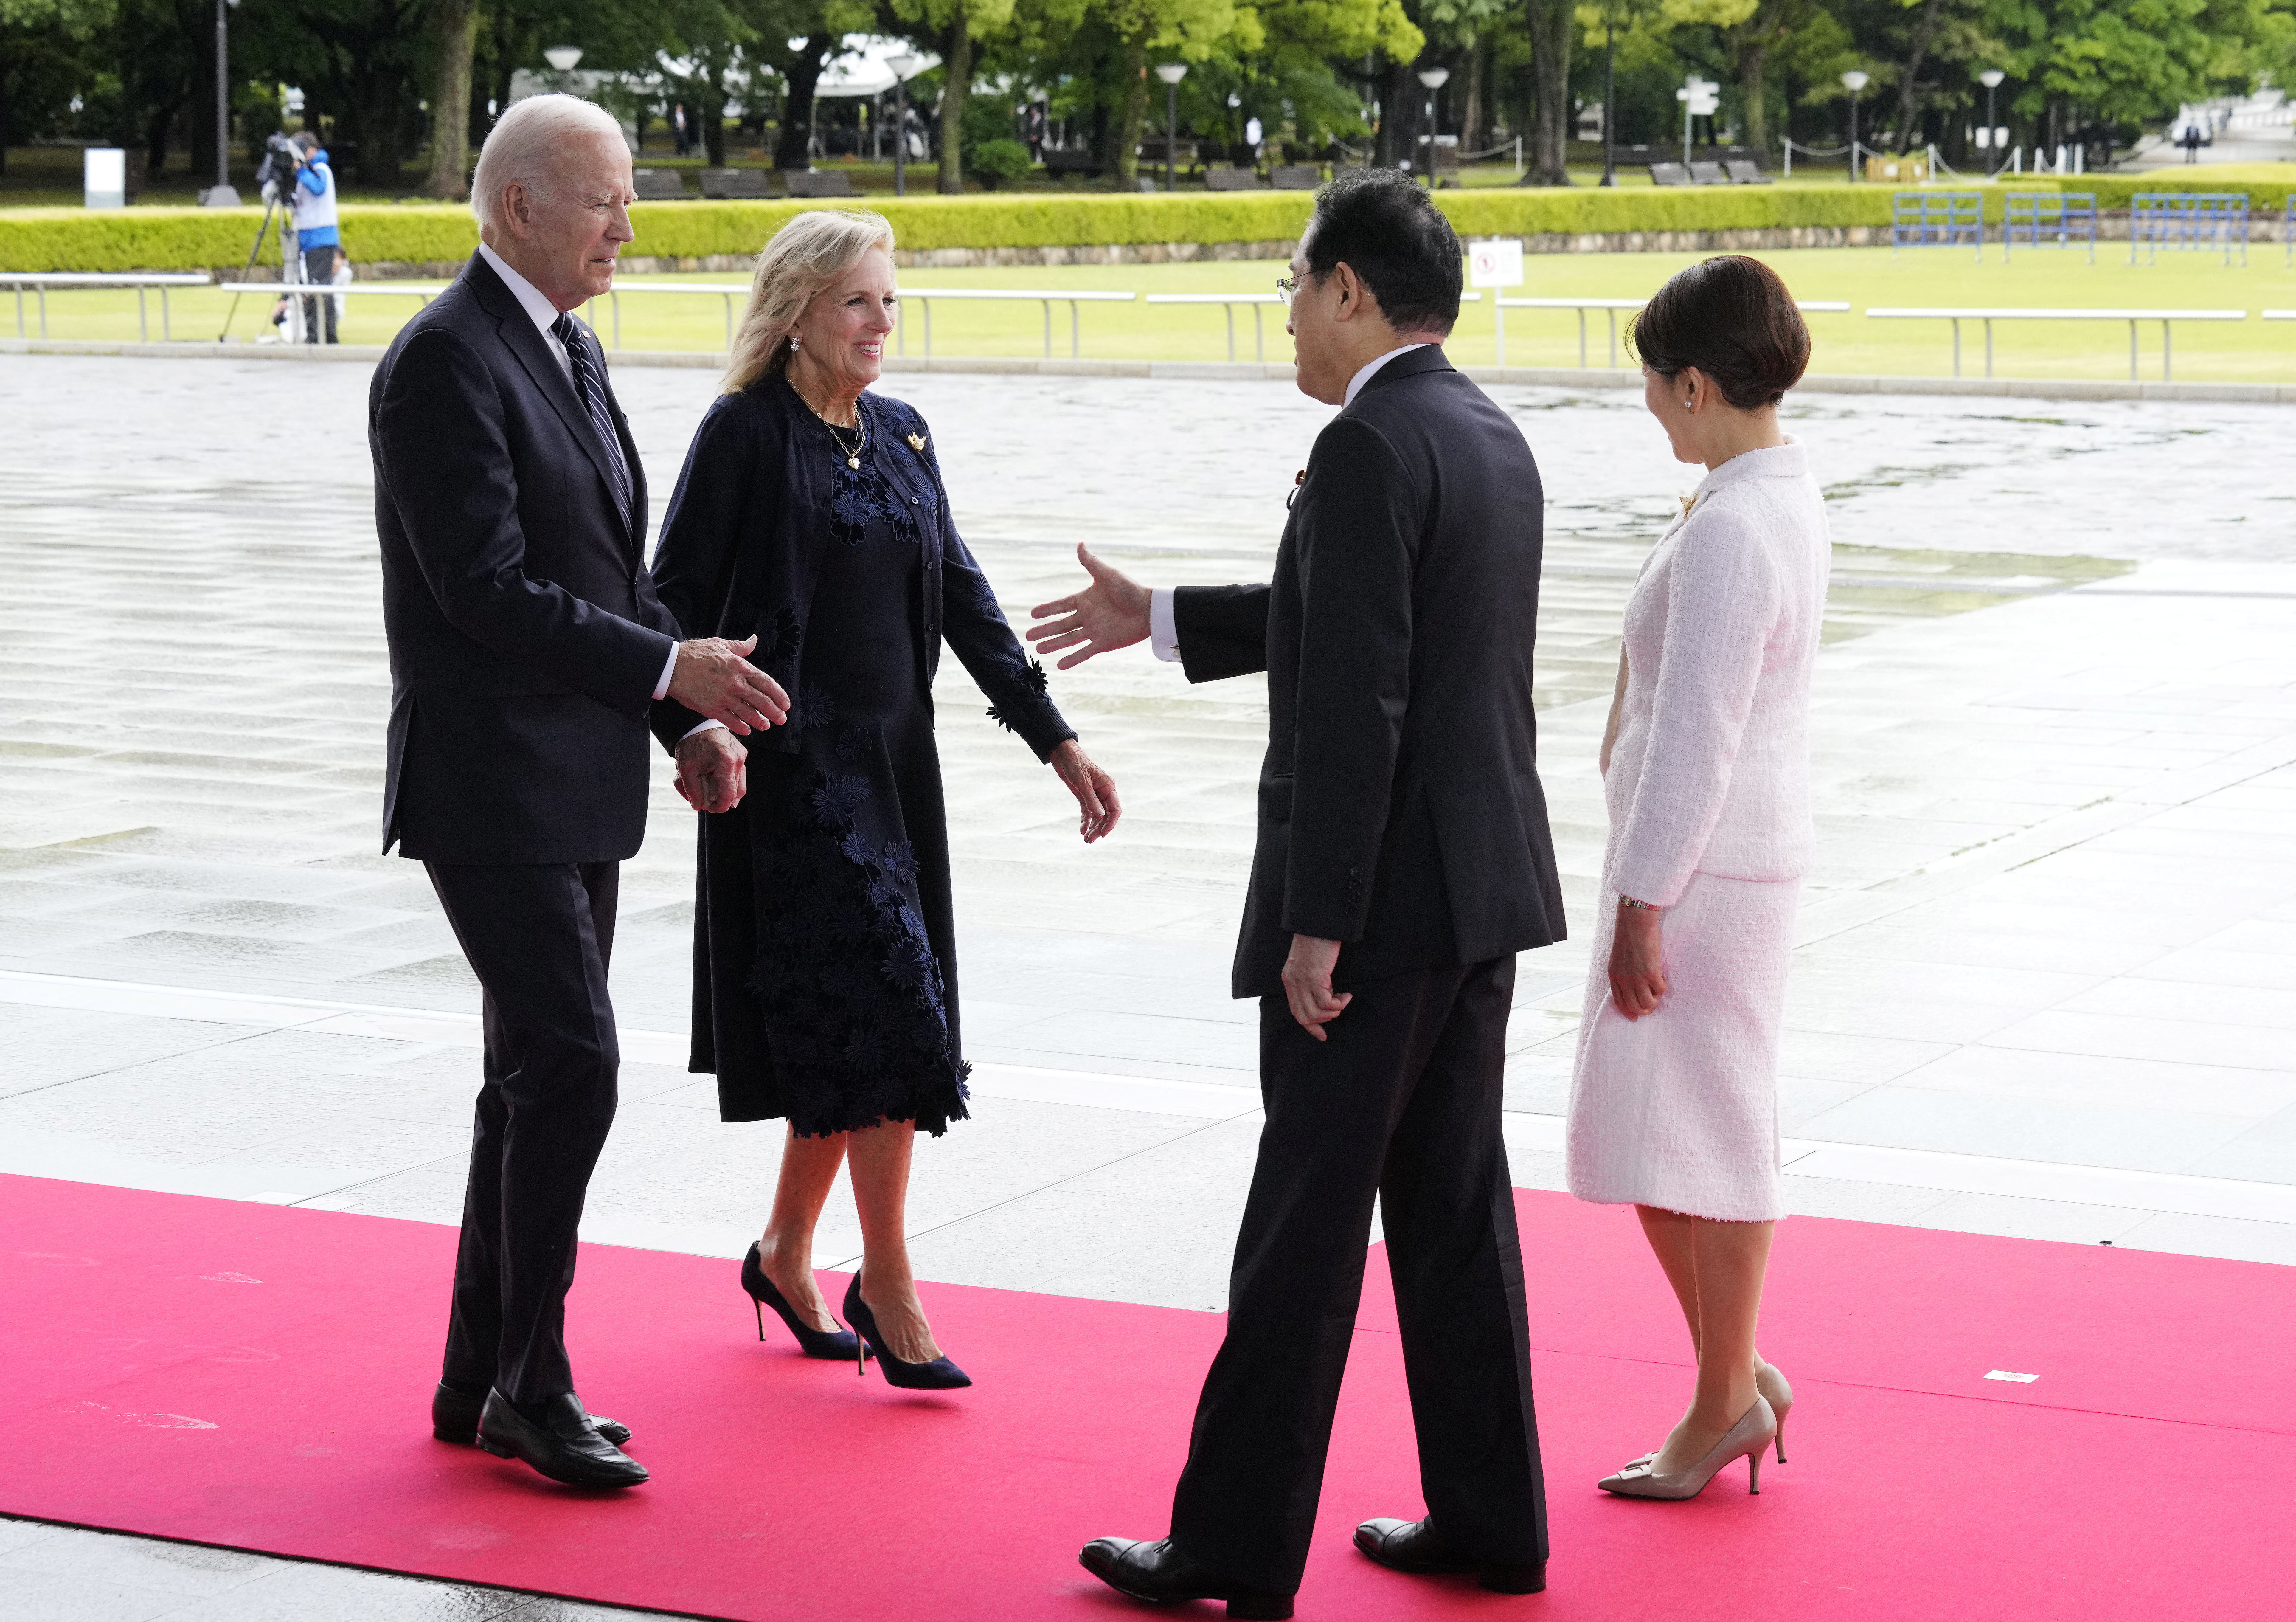 El presidente estadounidense Joe Biden y la primera dama Jill Biden son recibidos por el primer ministro japonés Fumio Kishida y su esposa Yuko Kishida en el Parque Memorial de la Paz. (REUTERS)